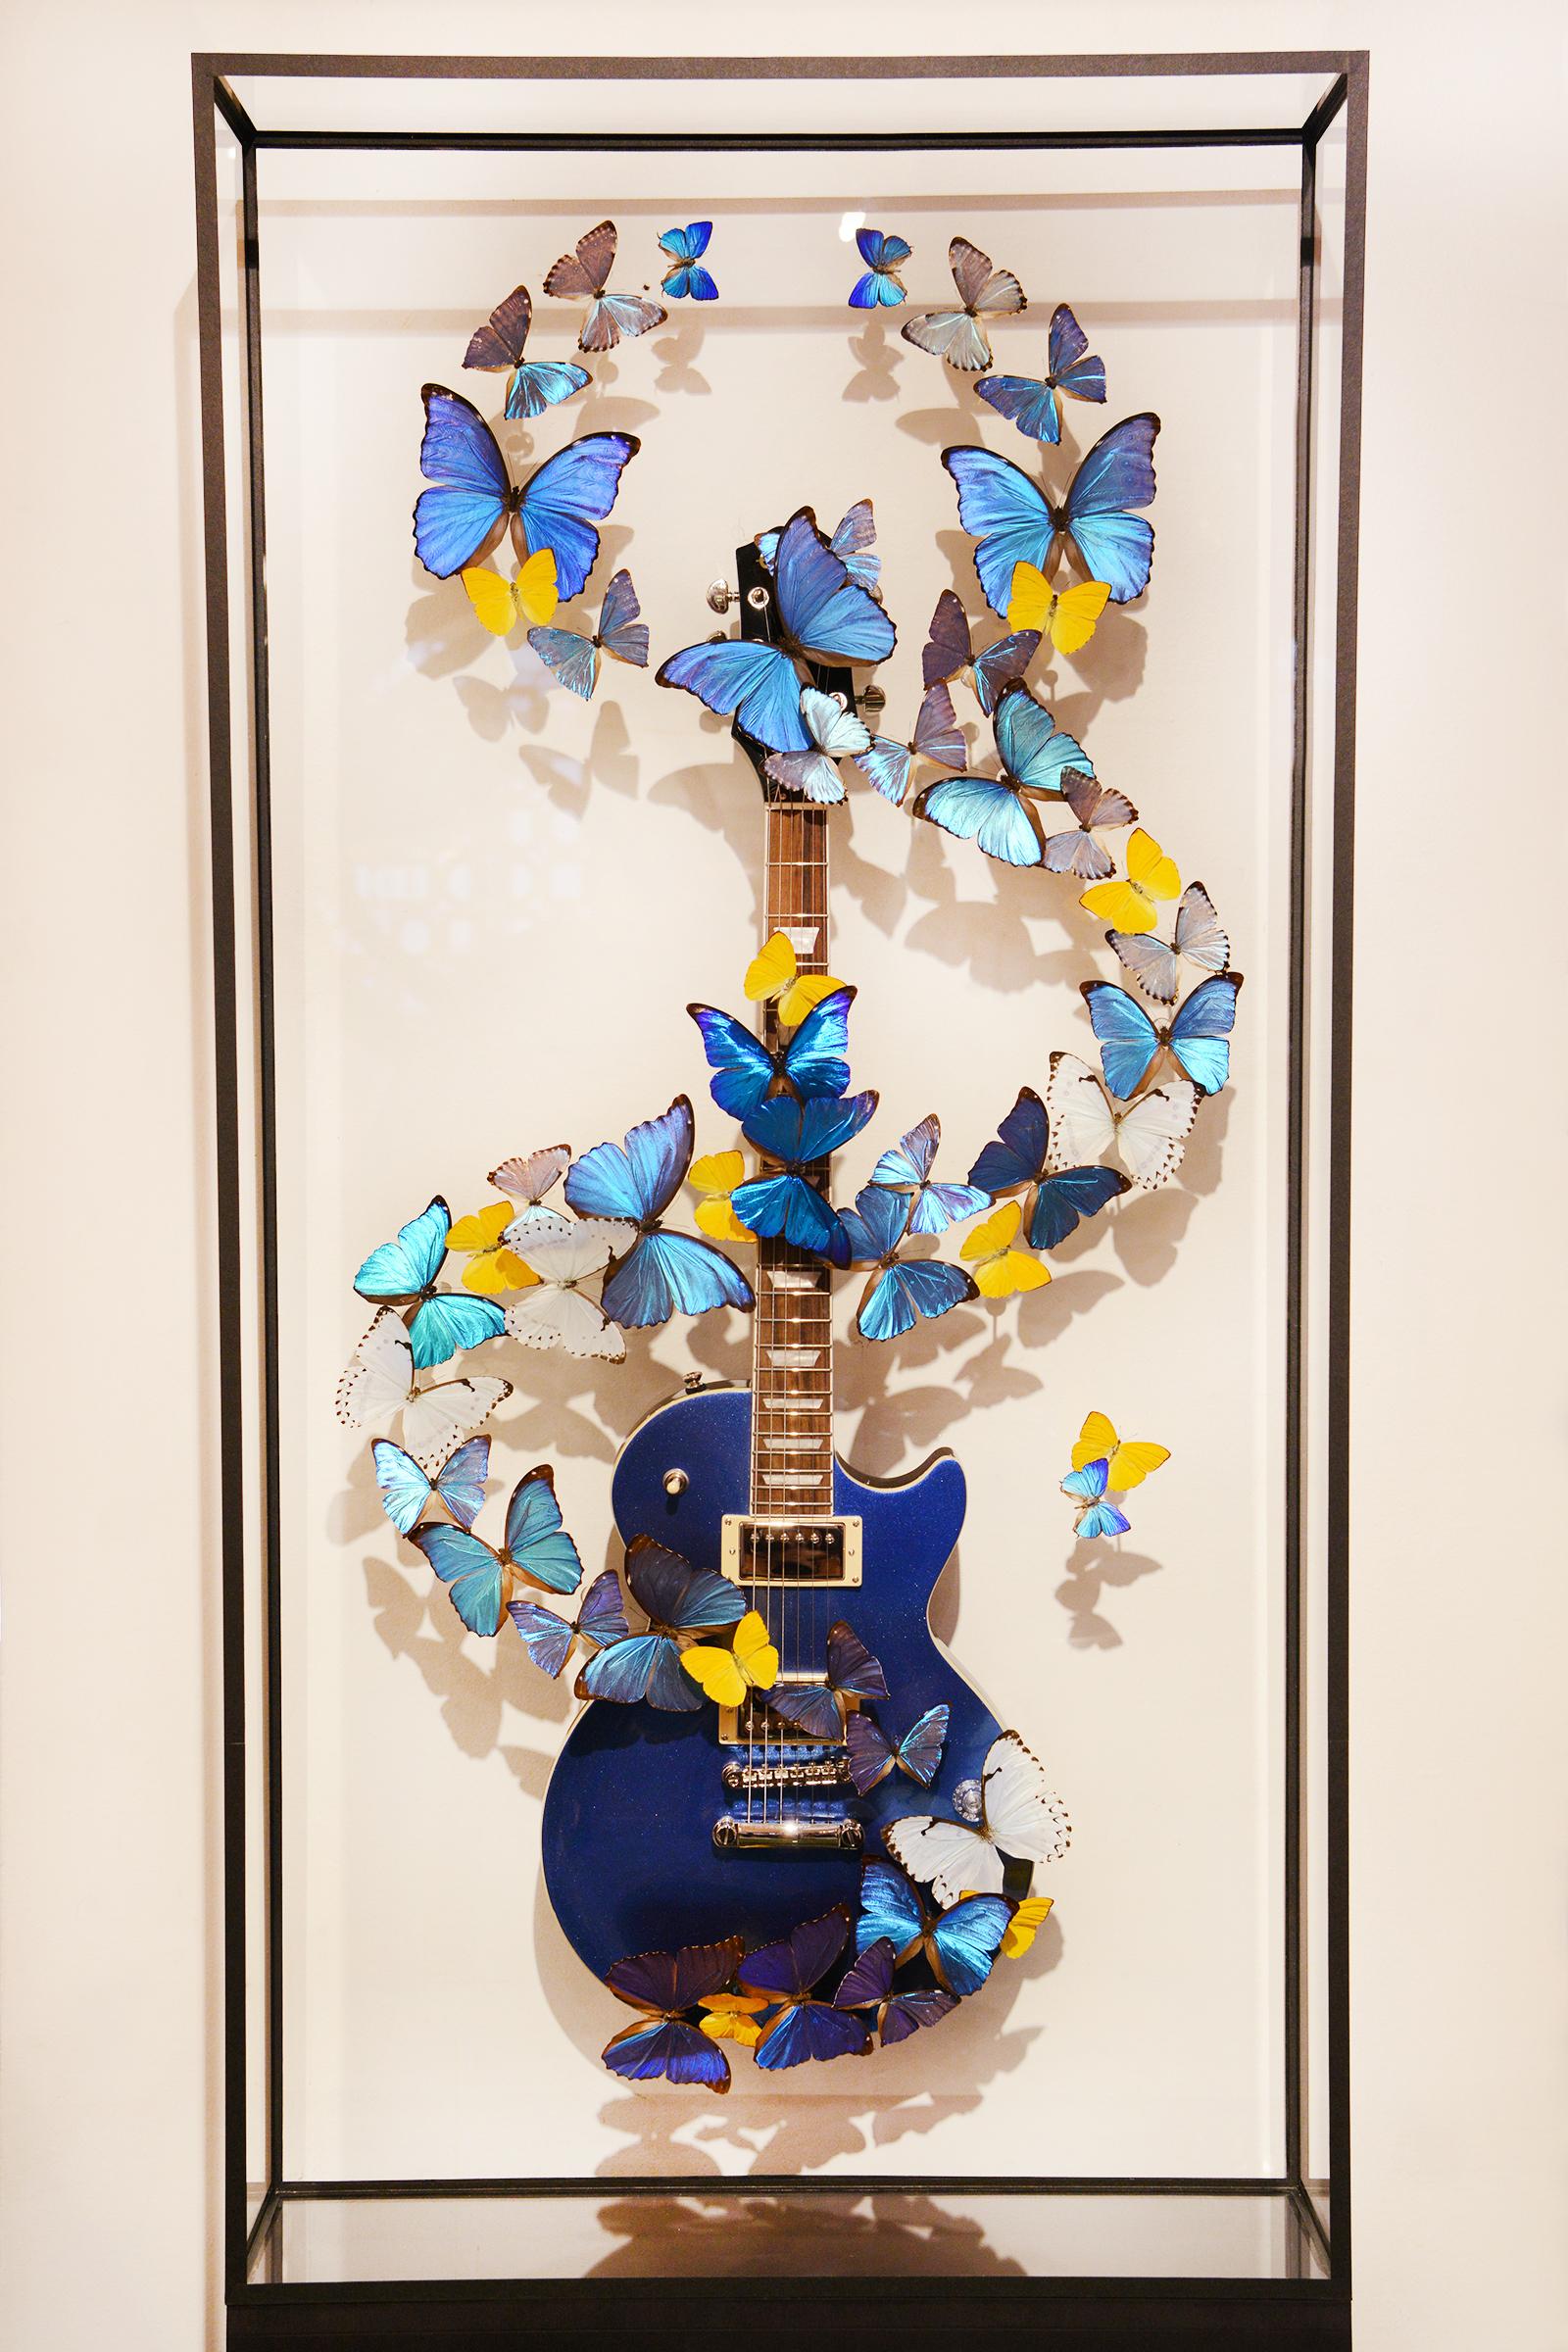 Gitarre Les Paul & Blaue Schmetterlinge aus einer echten Epiphone Les Paul Gitarre 
Inszenierung mit echten Schmetterlingen aus Farmen, für diese Schmetterlinge sind keine Zitate erforderlich.
Kunstwerk unter Glasrahmen auf Holzsockel in schwarzer